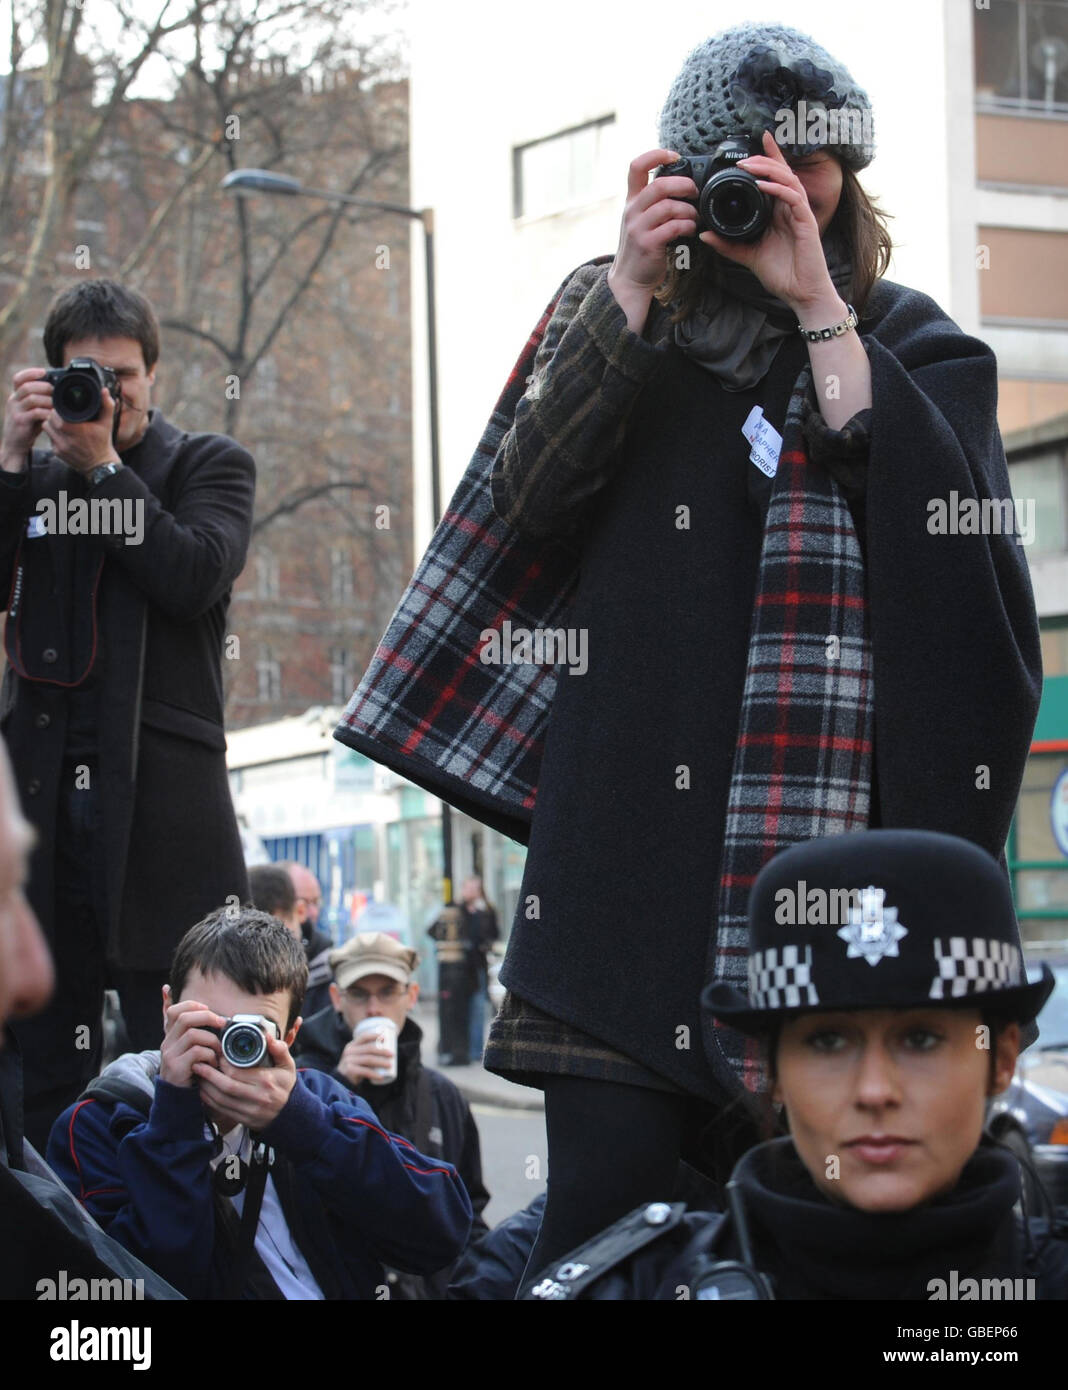 Fotografen fotografieren heute Polizeibeamte vor dem New Scotland Yard in London, als etwa 150 Fotografen aus Protest gegen ein neues Anti-Terror-Gesetz ein Massenfoto schießen. Fotojournalisten sagen, dass Sektion 76 des Anti-Terror-Gesetzes, das heute Gesetz wurde, sie wegen ihrer Arbeit verhaftet sehen könnte. Stockfoto